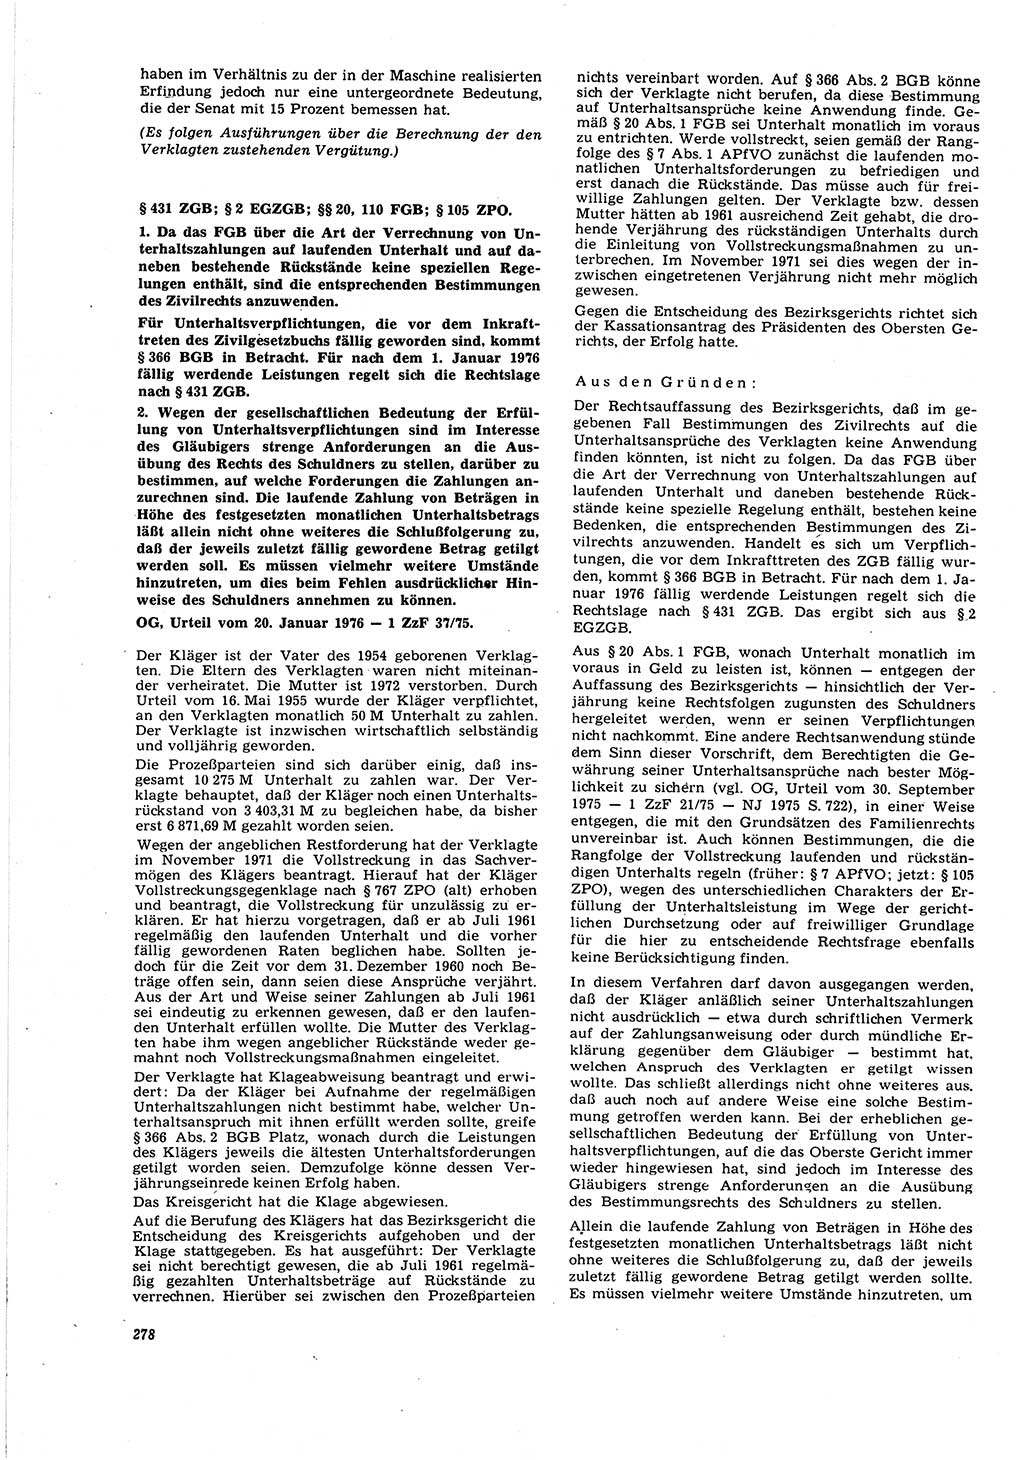 Neue Justiz (NJ), Zeitschrift für Recht und Rechtswissenschaft [Deutsche Demokratische Republik (DDR)], 30. Jahrgang 1976, Seite 278 (NJ DDR 1976, S. 278)